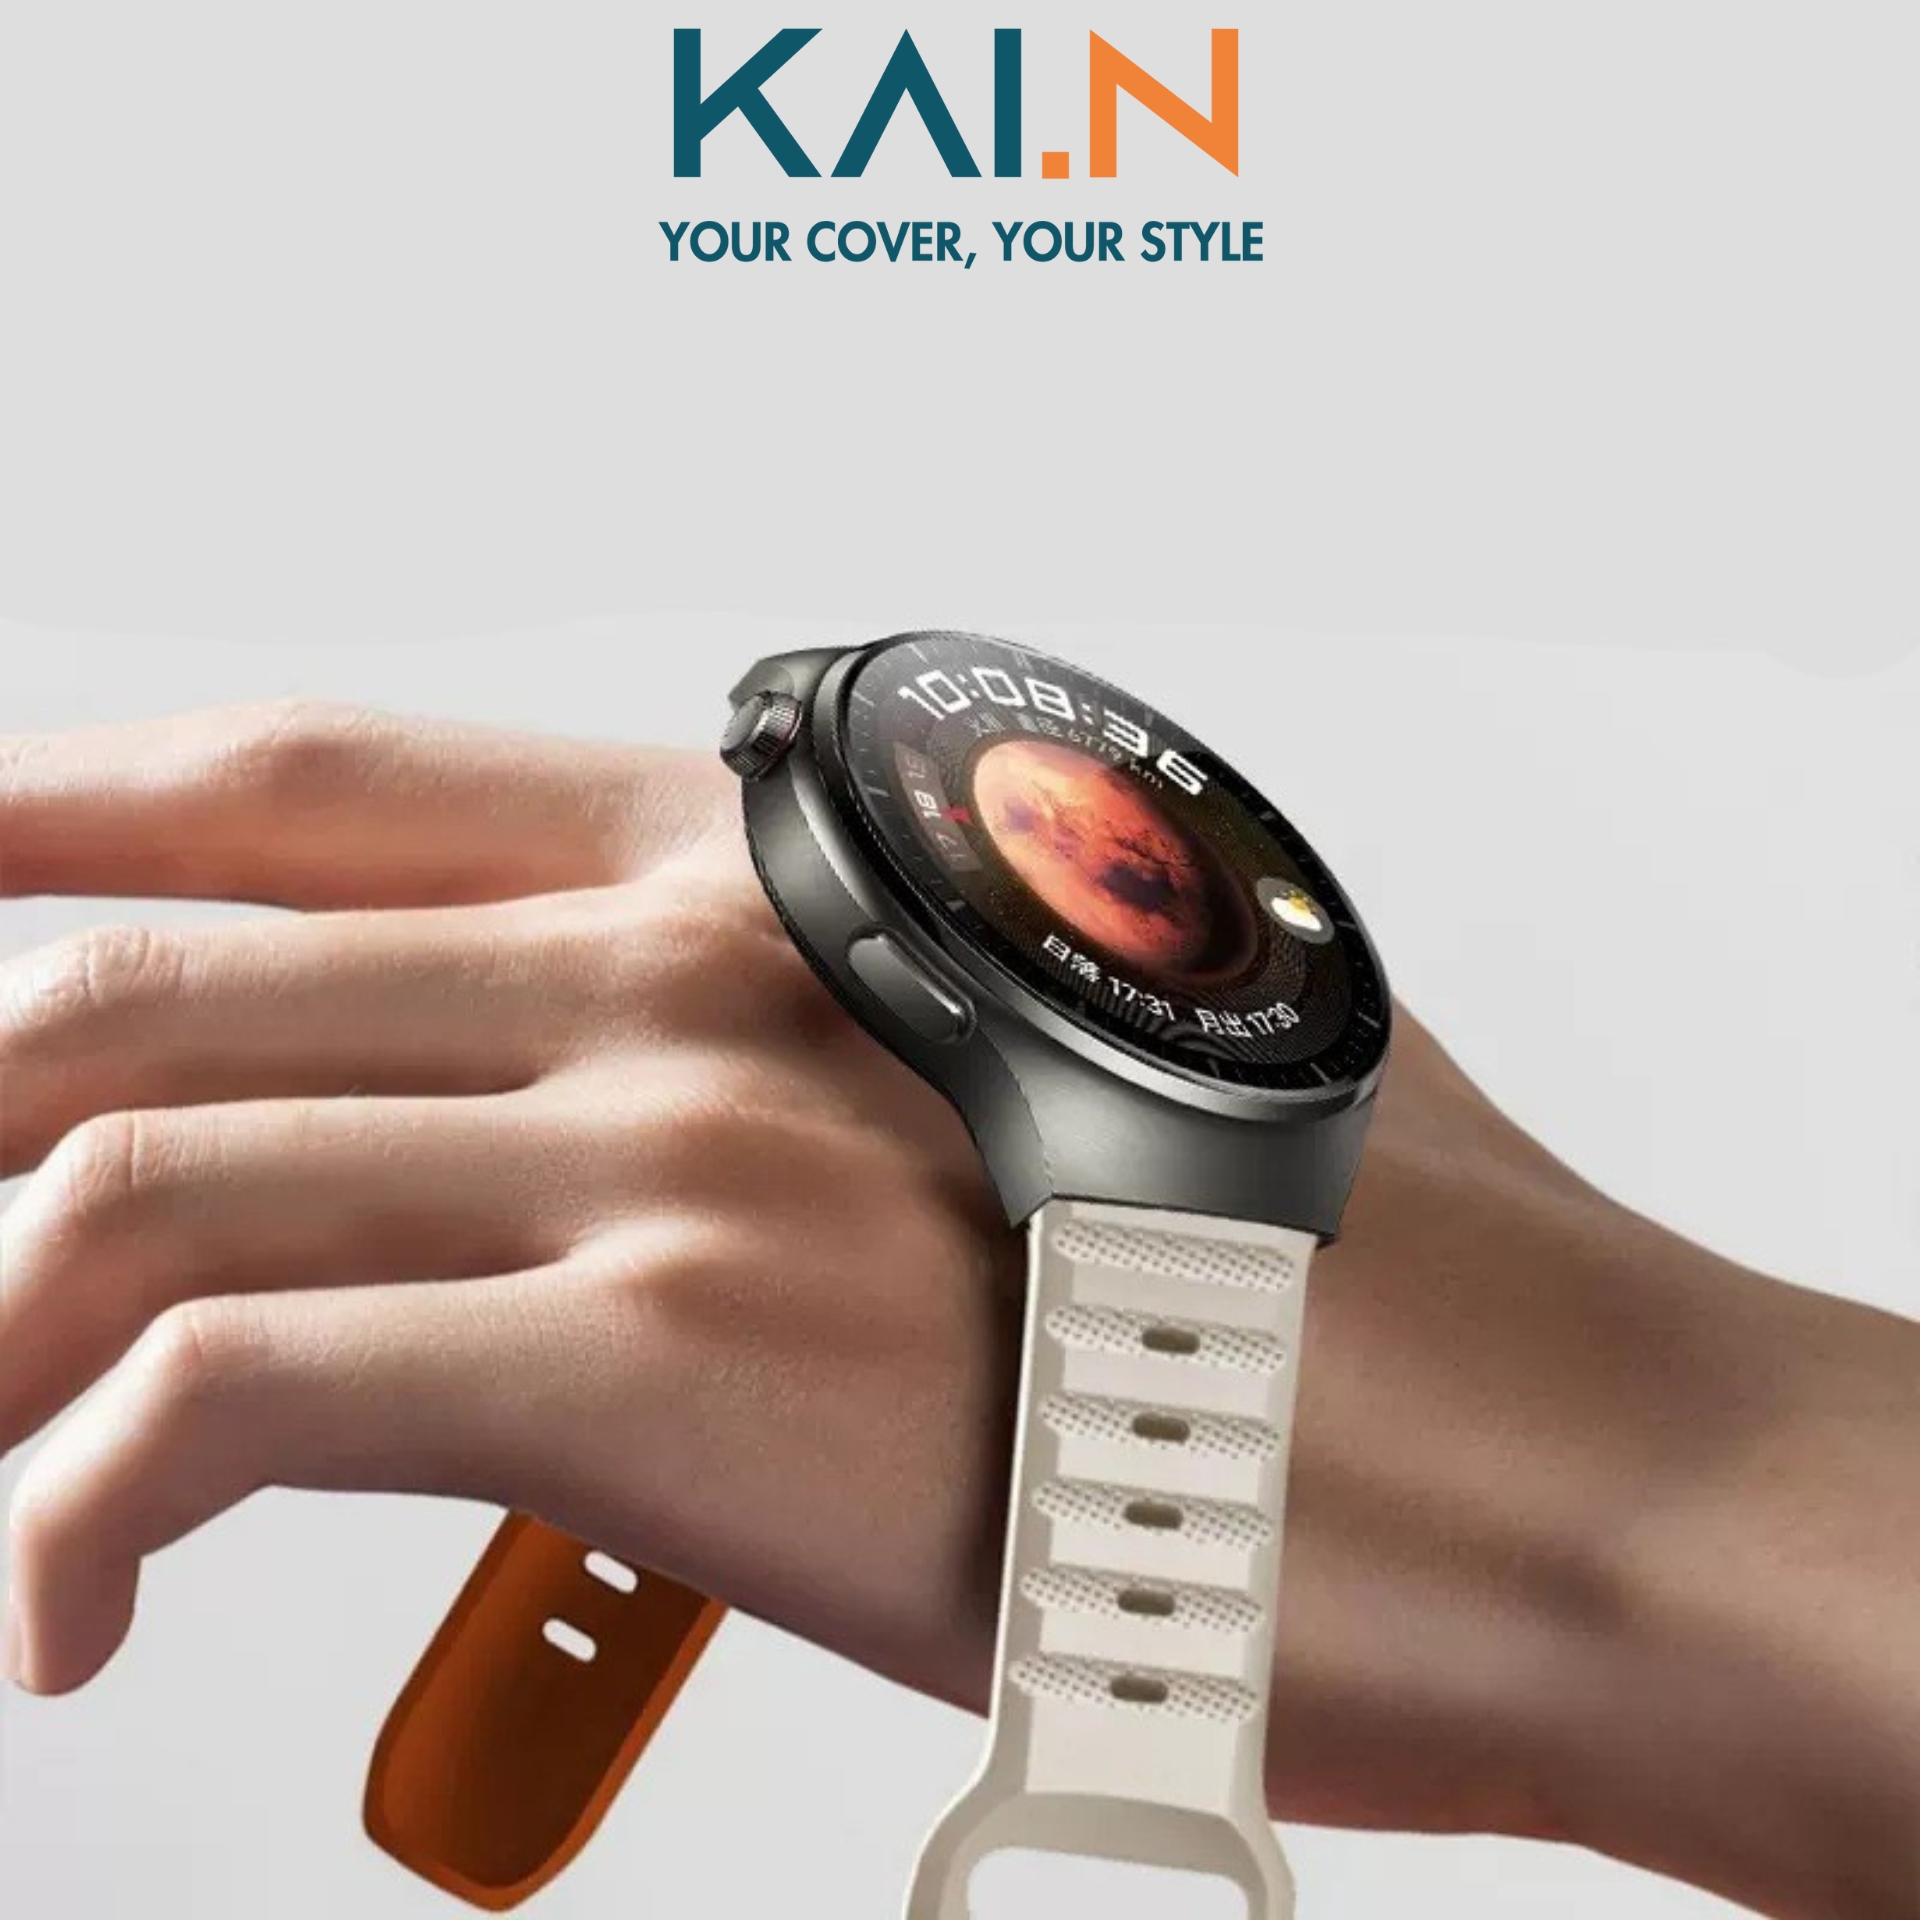 Dây Đeo Thay Thế Dành Cho Galaxy Watch 5/4/3, Huawei Watch GT/GT2/GT3/Pro, Amazfit GT2/3/4,Garmin Size 20/22mm, Kai.N Sport Band - Hàng Chính Hãng